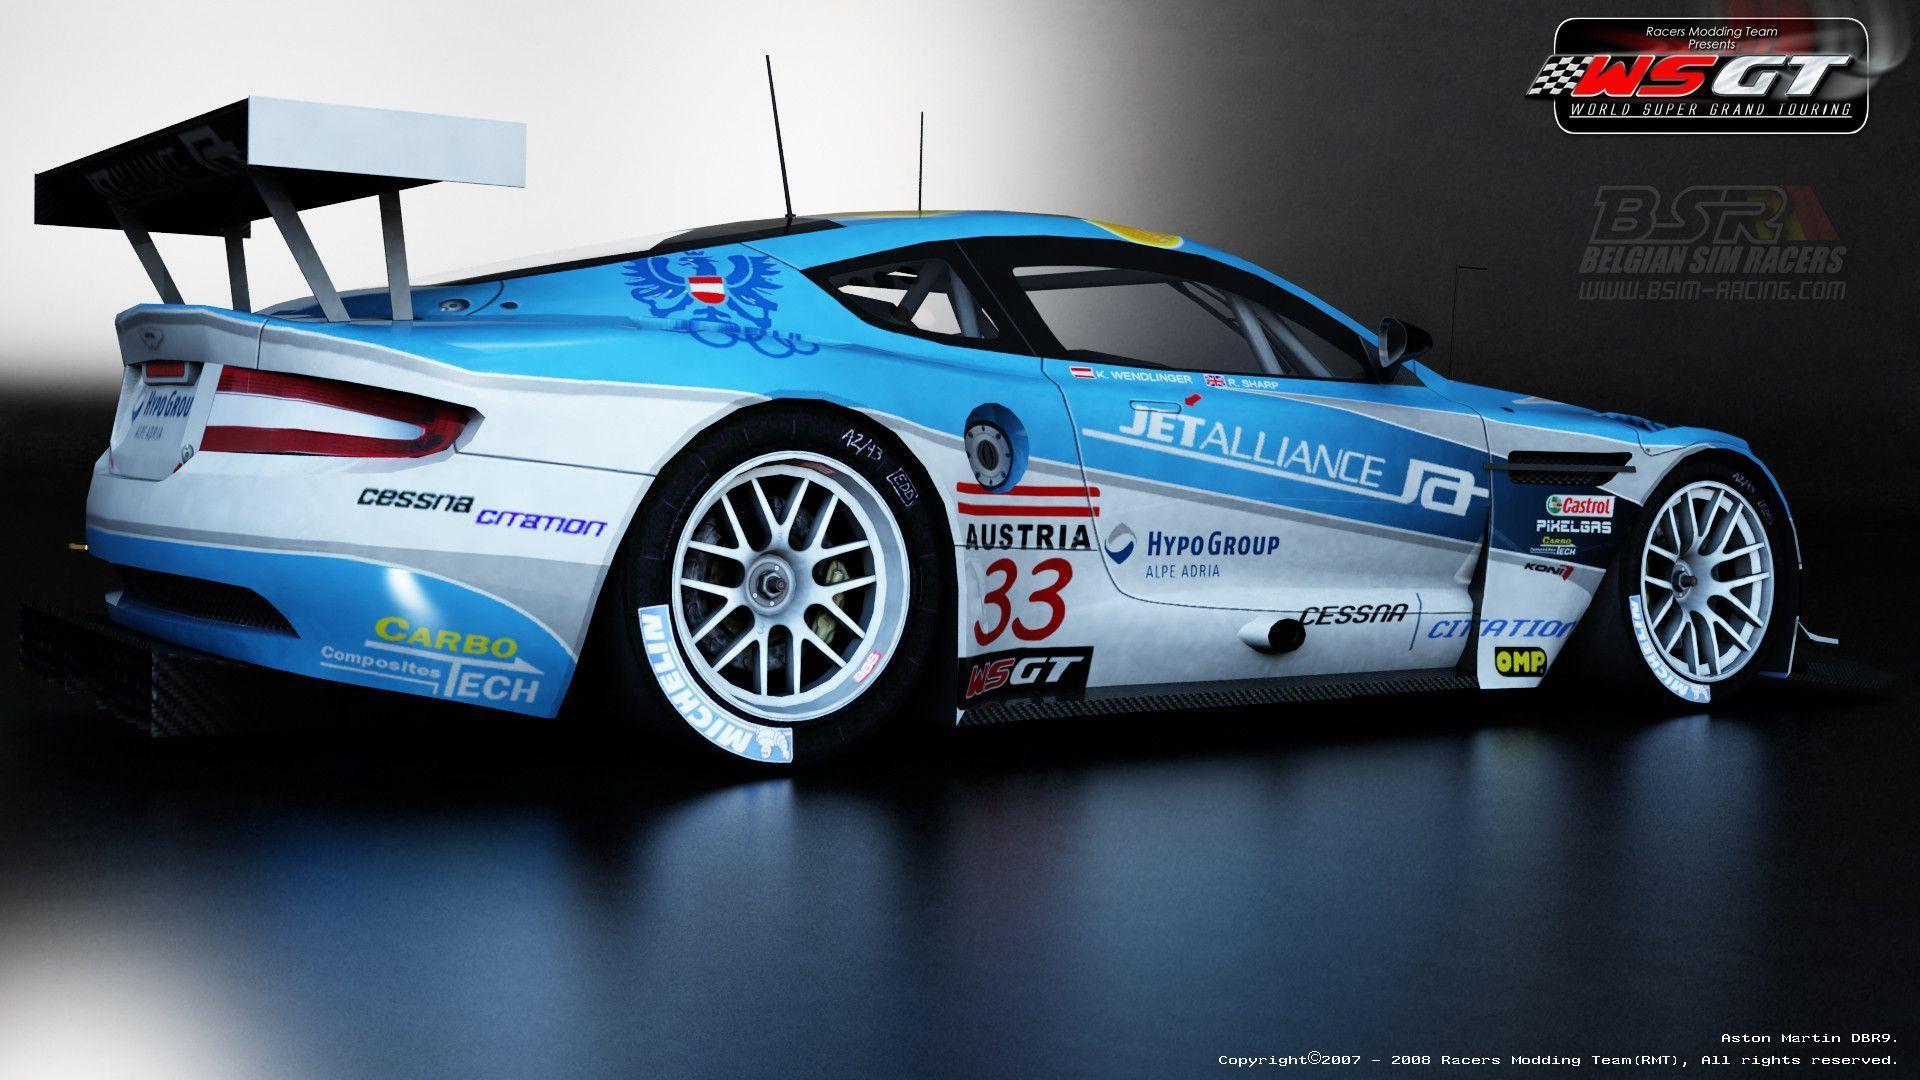 World Super GT Mod New Wallpaper. VirtualR Racing News